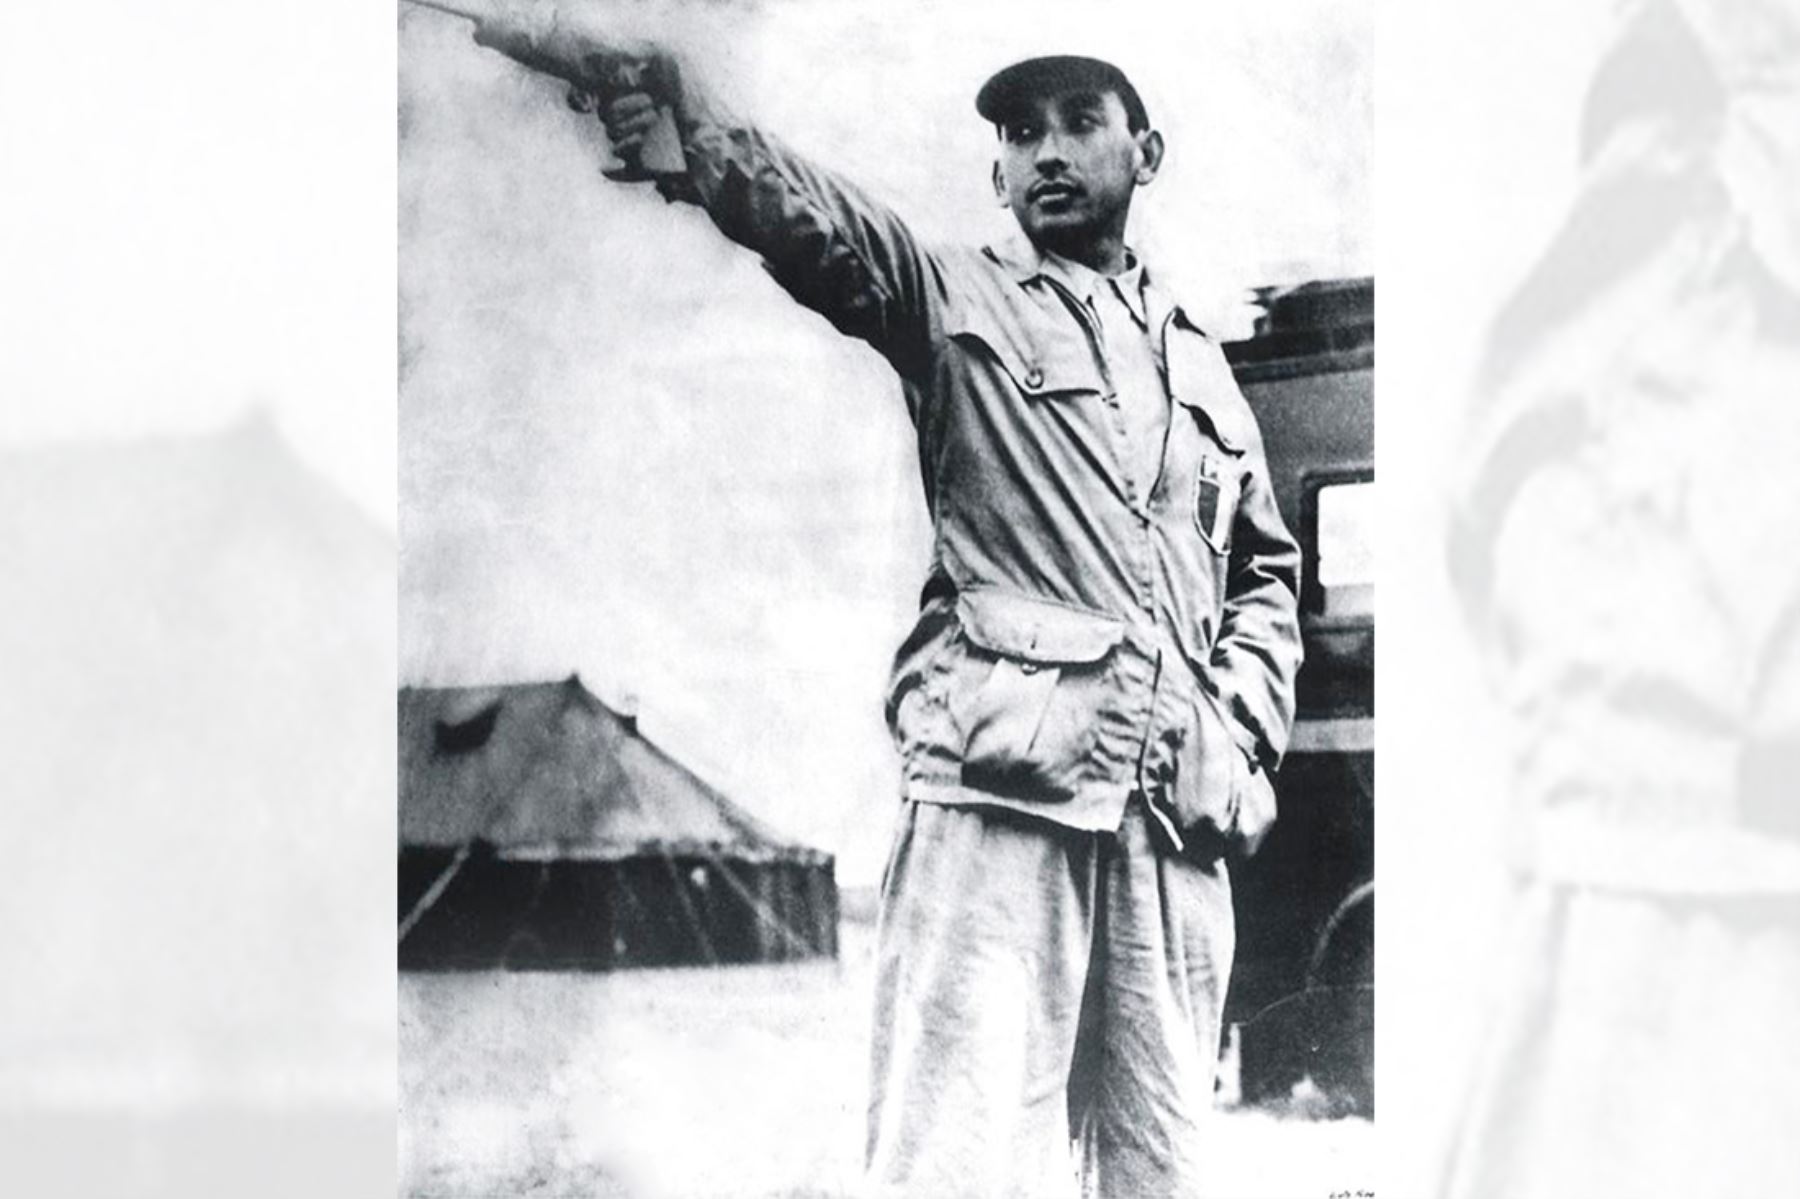 Edwin Vásquez en Bisley Camp, cuando ha disparado su última bala y aún queda su arma en alto, a la espera de la victoria en los Juegos Olímpicos de Londres 1948 ( Londres - 2 agosto 1948) Foto: INP / La Crónica